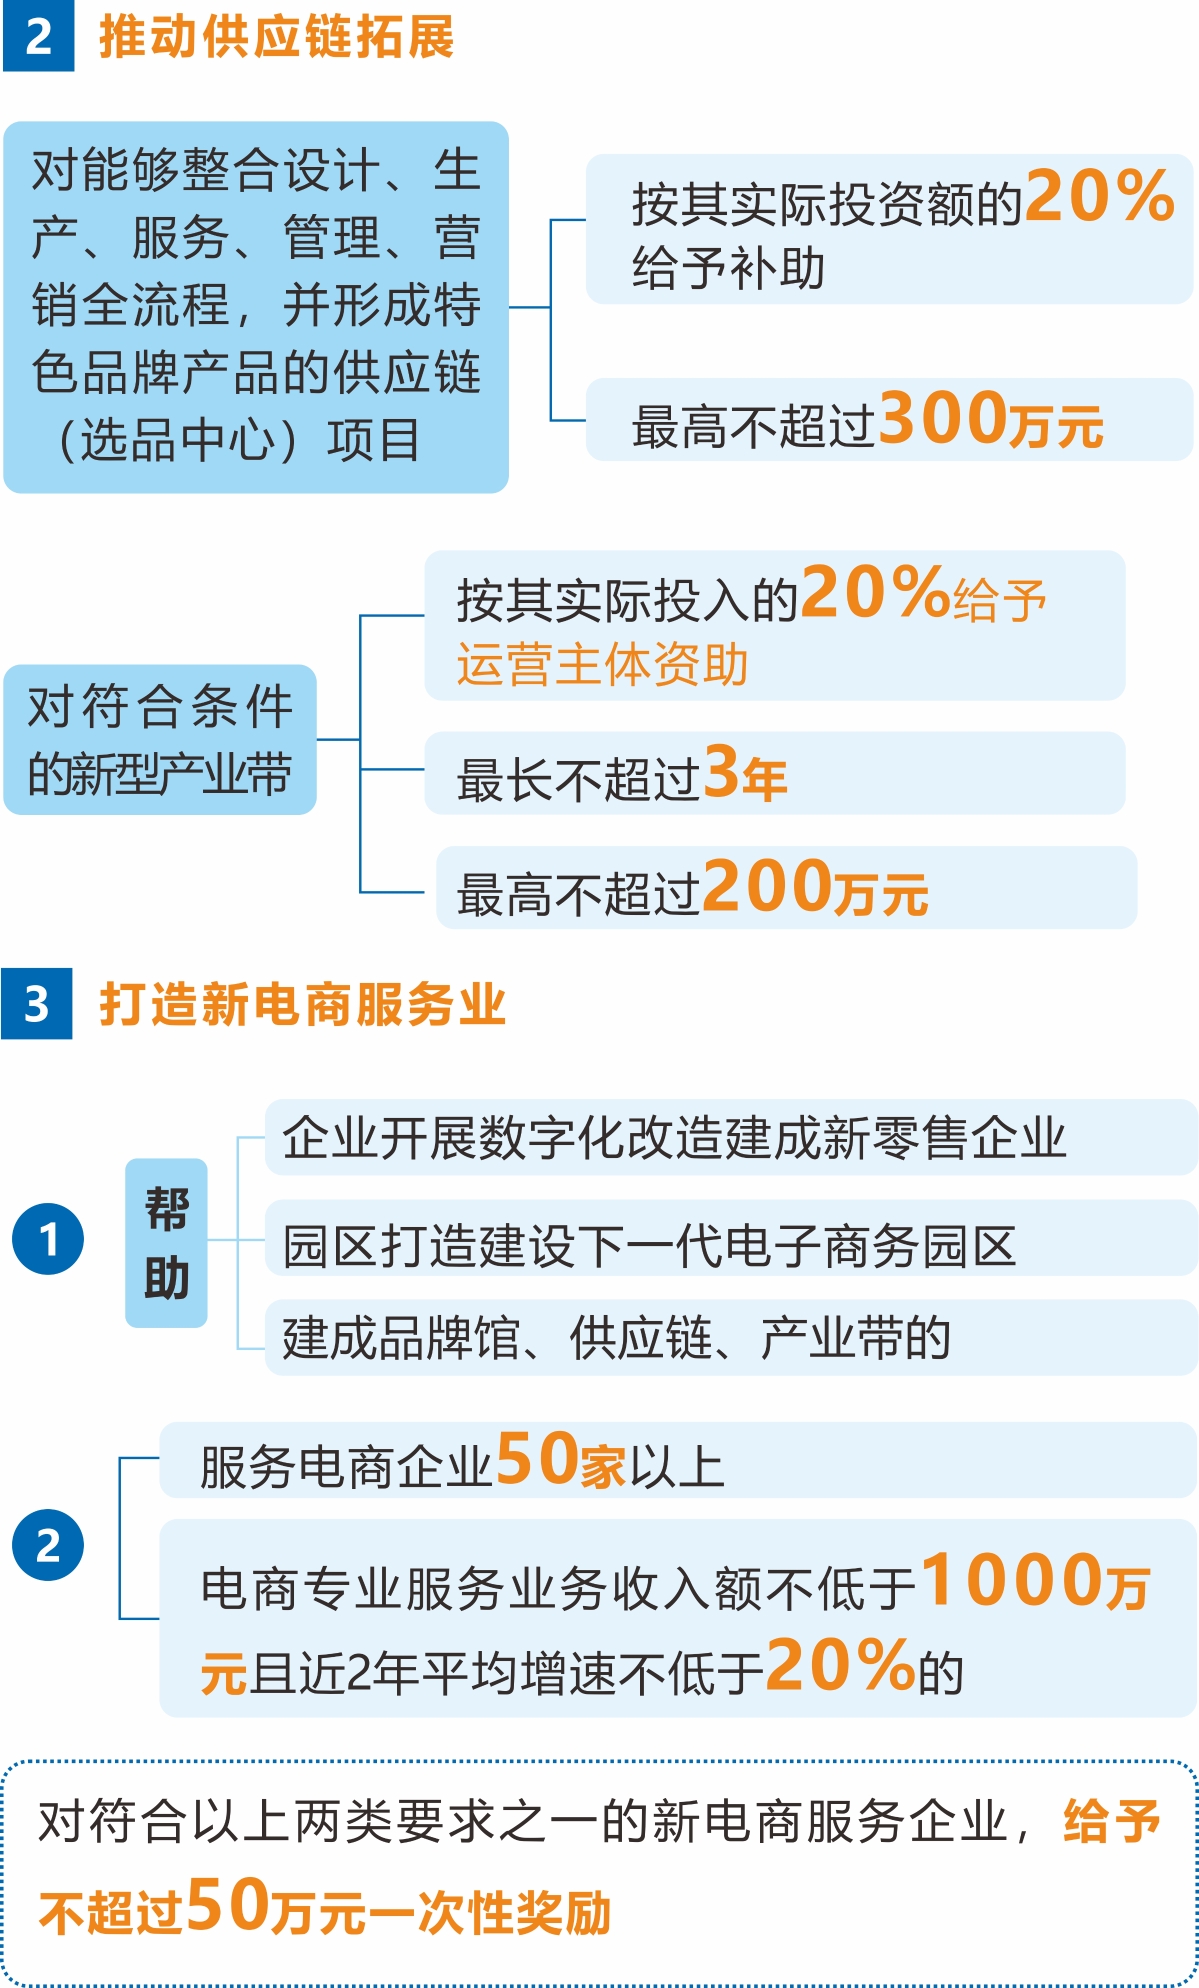 《杭州市人民政府办公厅关于促进杭州市新电商高质量发展的若干意见》解读